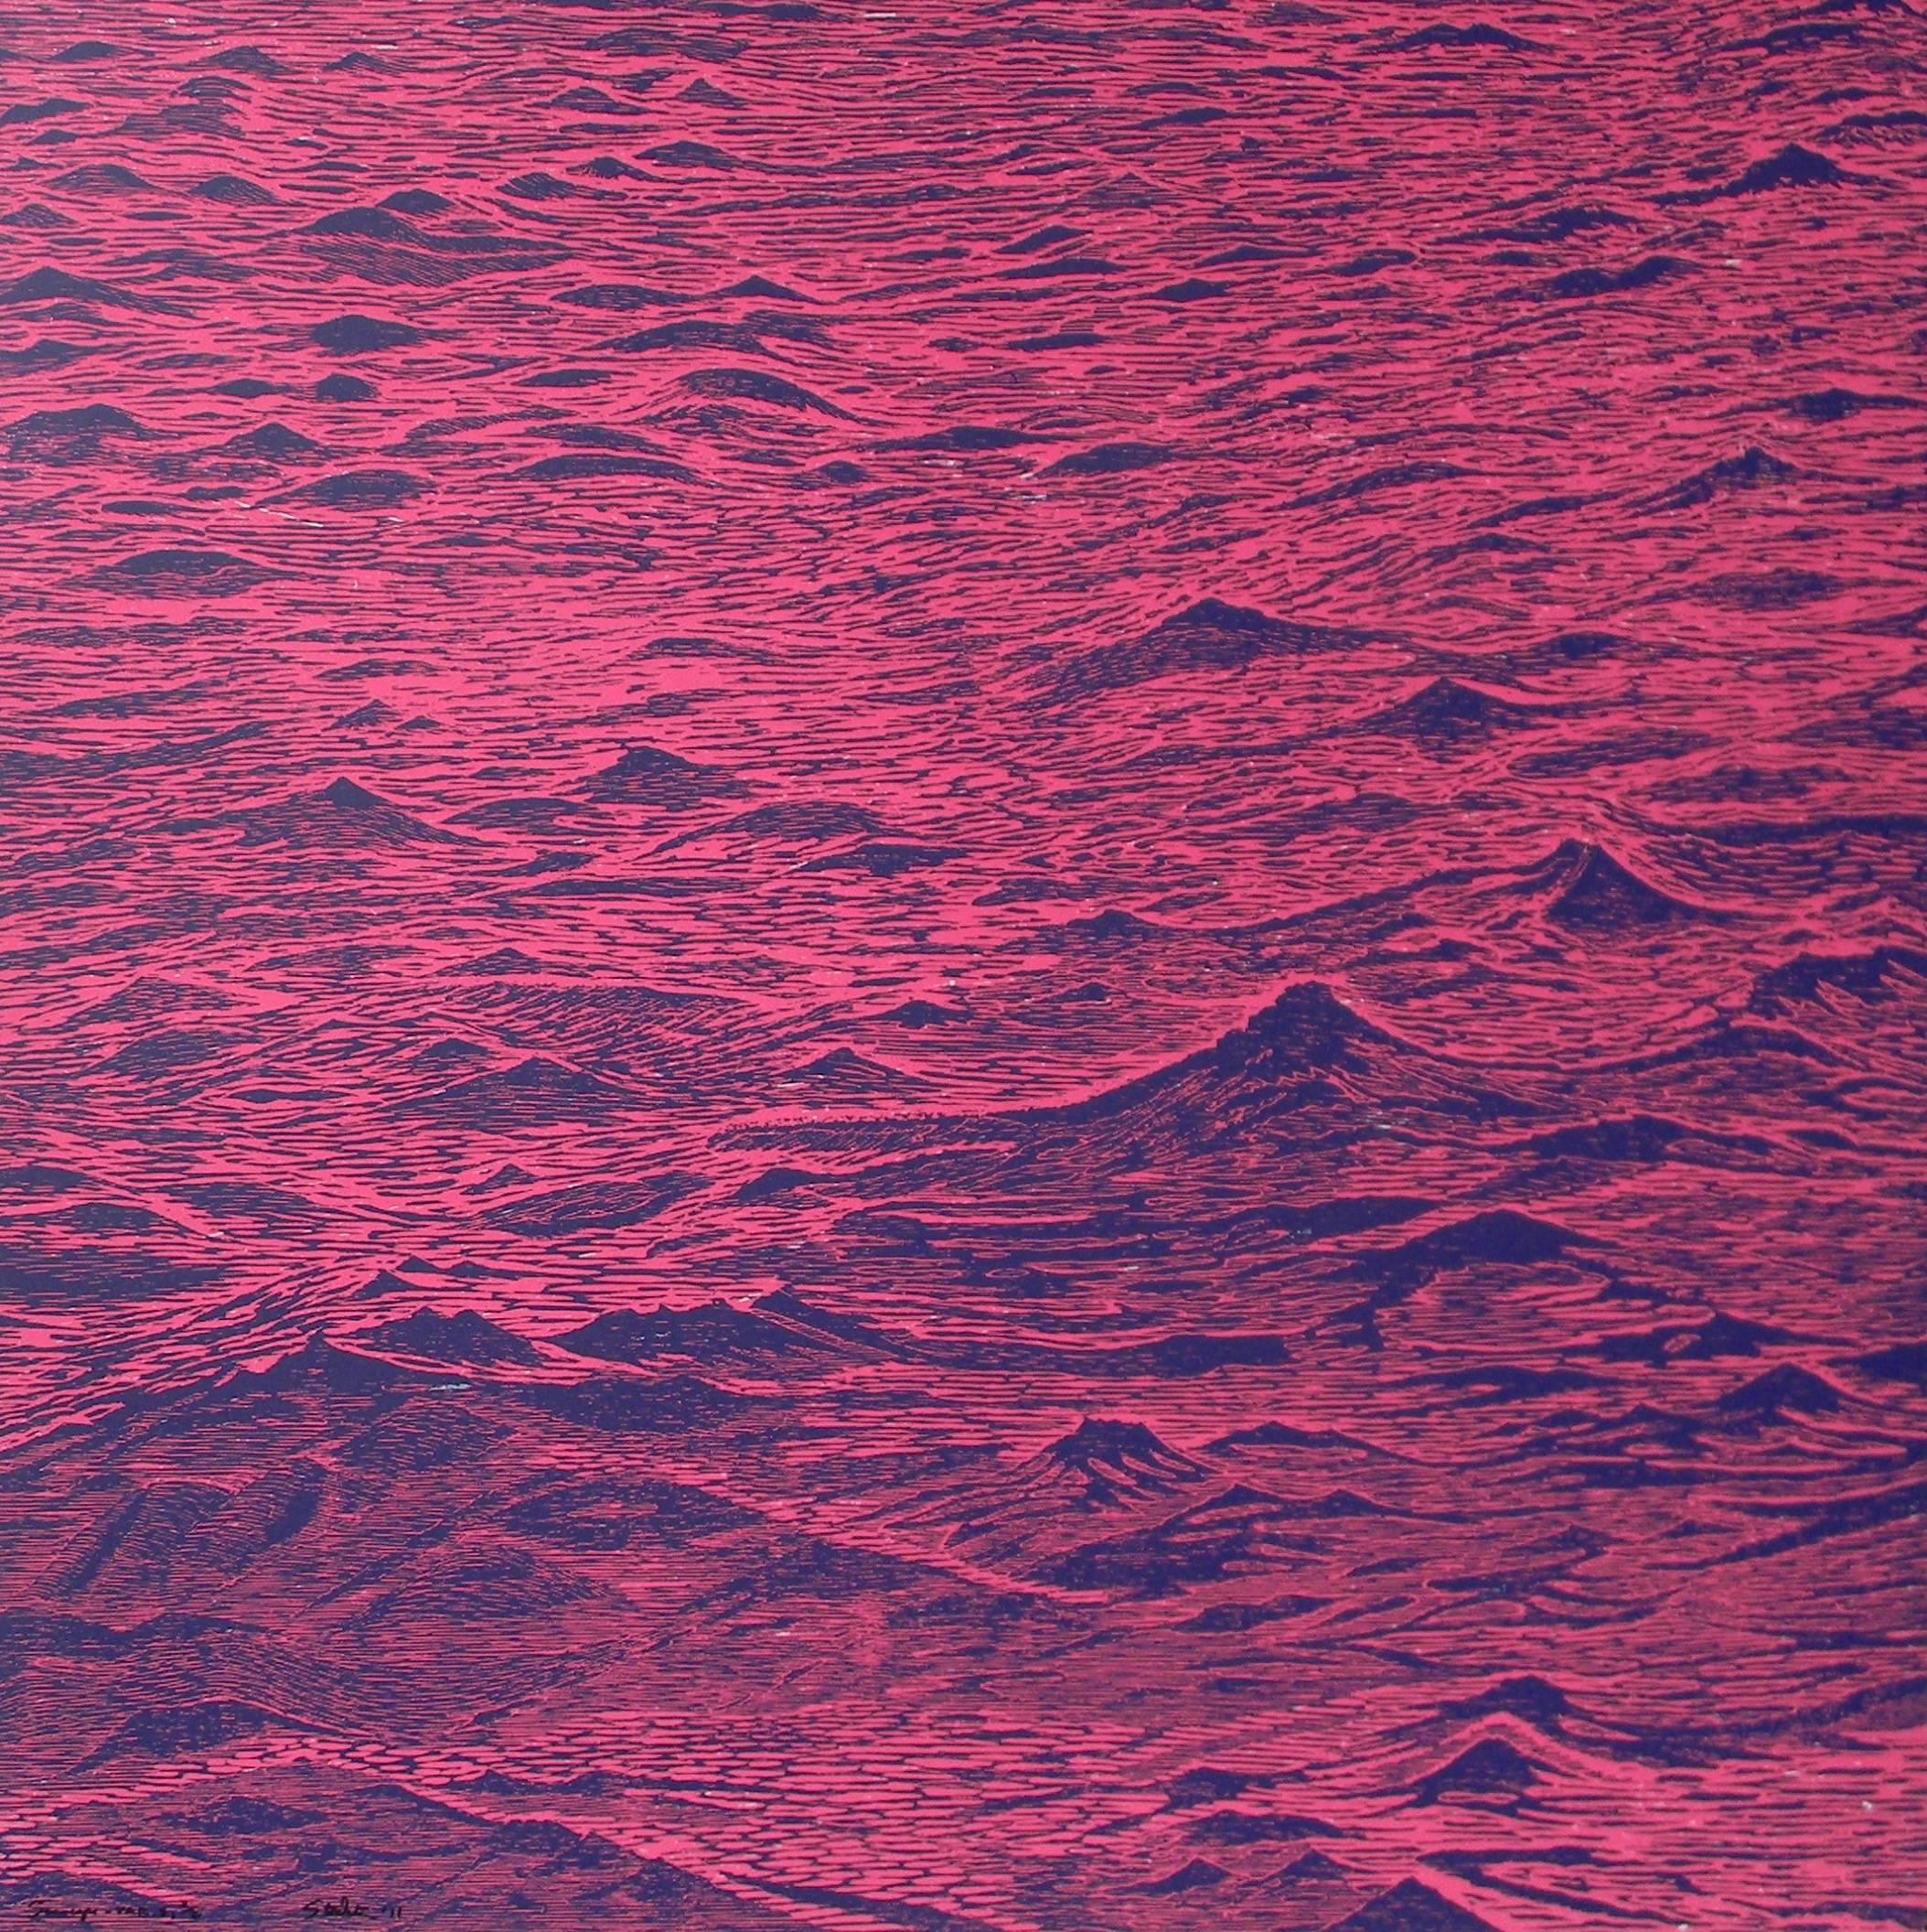 Abstract Print Eve Stockton - Impression sur bois Seascape Five, rose vif, bleu cobalt foncé, vagues océaniques